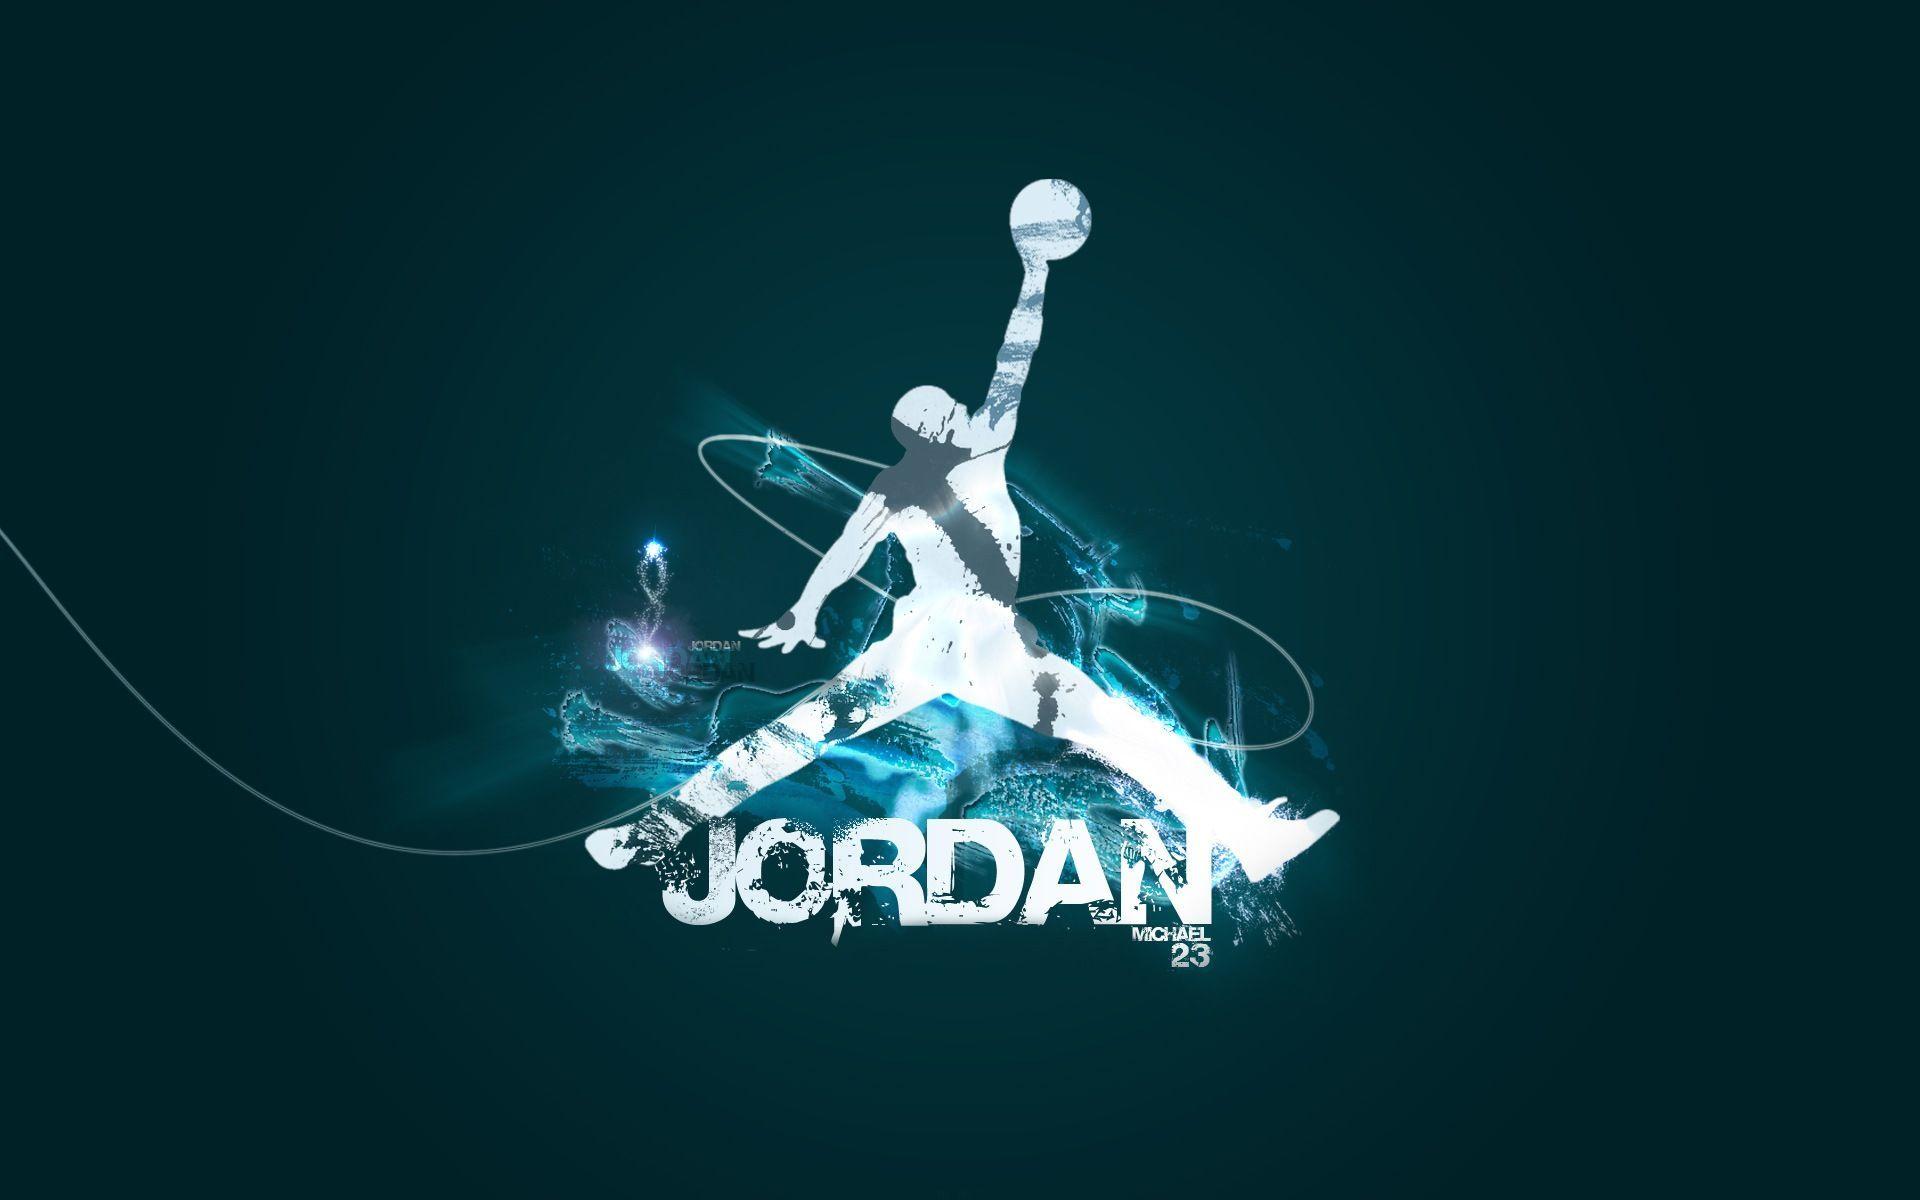 Michael Jordan Iphone Wallpaper #michaeljordaniphonewallpaper | Hình ảnh,  Hình nền iphone, Cầu thủ nba